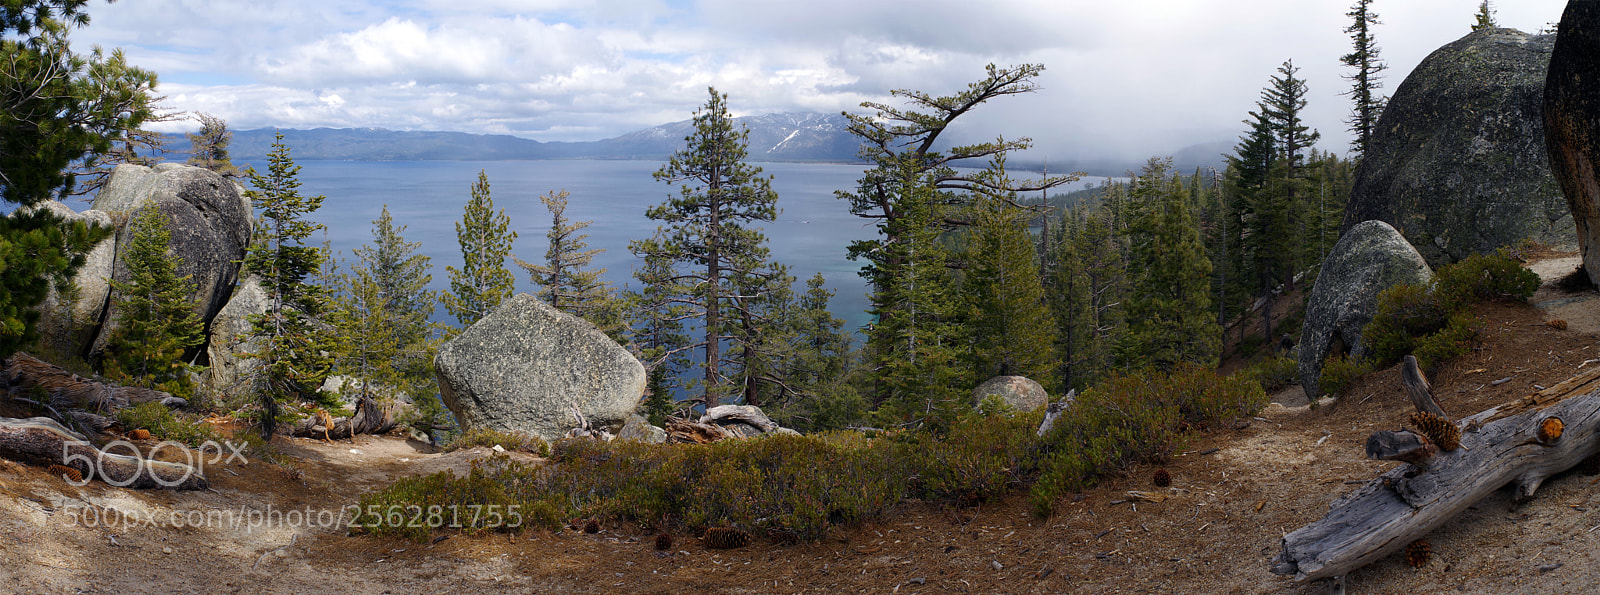 Pentax K-1 sample photo. Lake tahoe photography